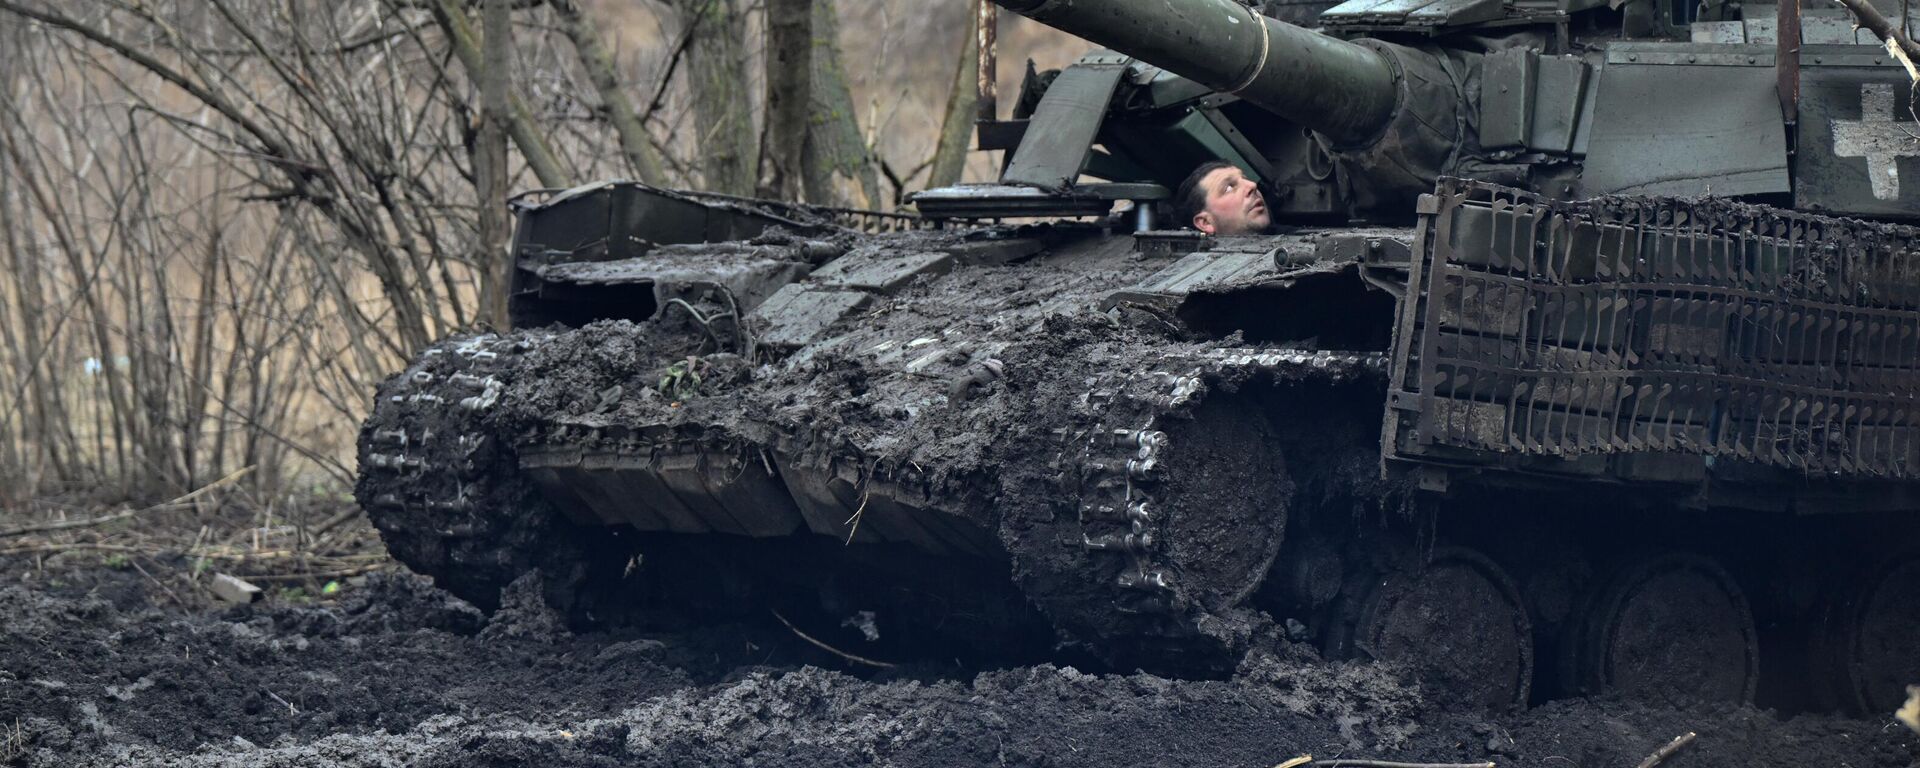 Militares ucranianos revisan su tanque después de un mantenimiento en la región de Donetsk, el 5 de febrero de 2024 - Sputnik Mundo, 1920, 08.02.2024